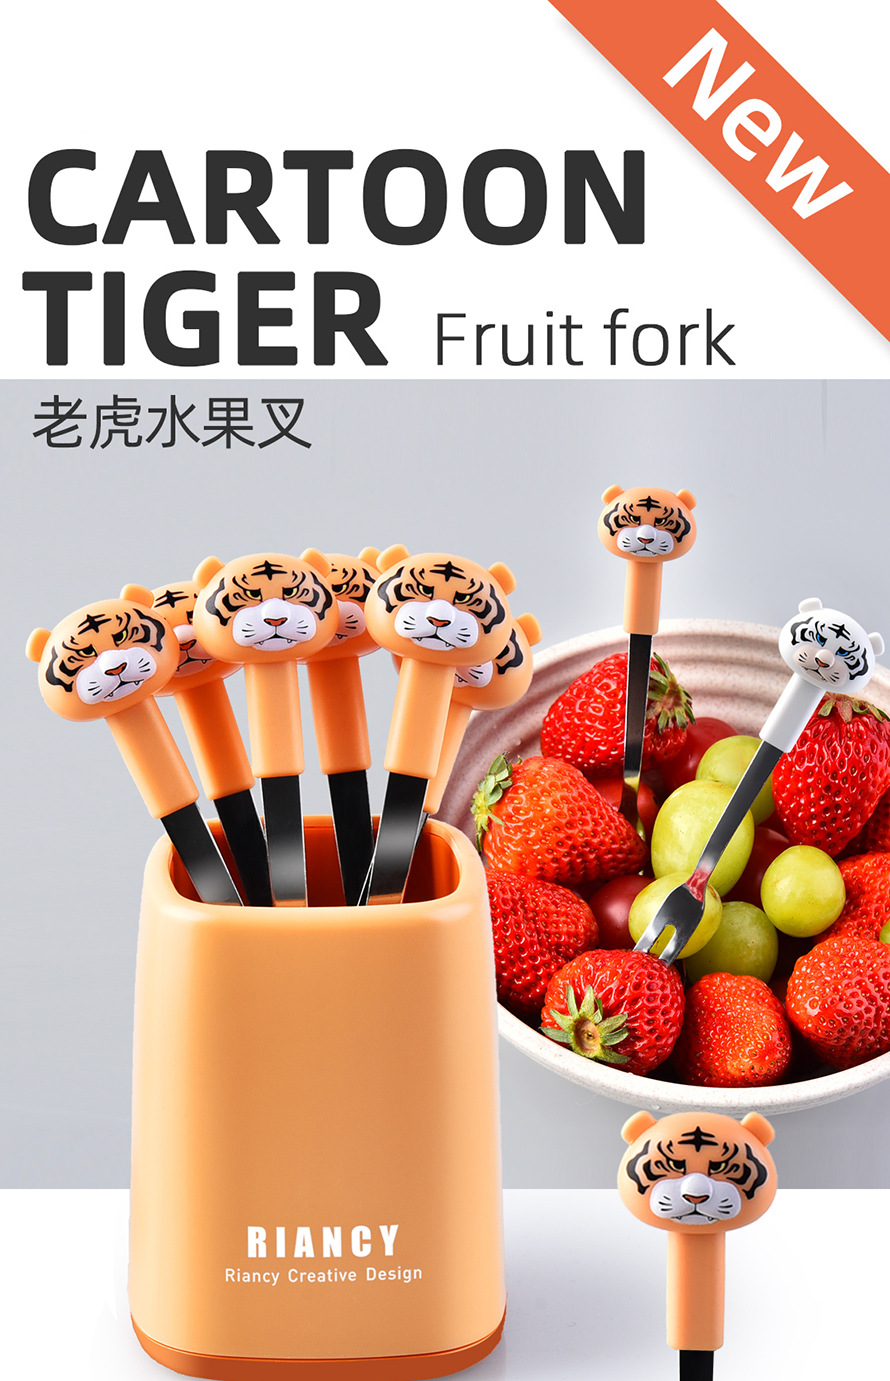 老虎頭造型水果叉 不鏽鋼甜品蛋糕小叉子 時尚老虎水果叉 6支裝